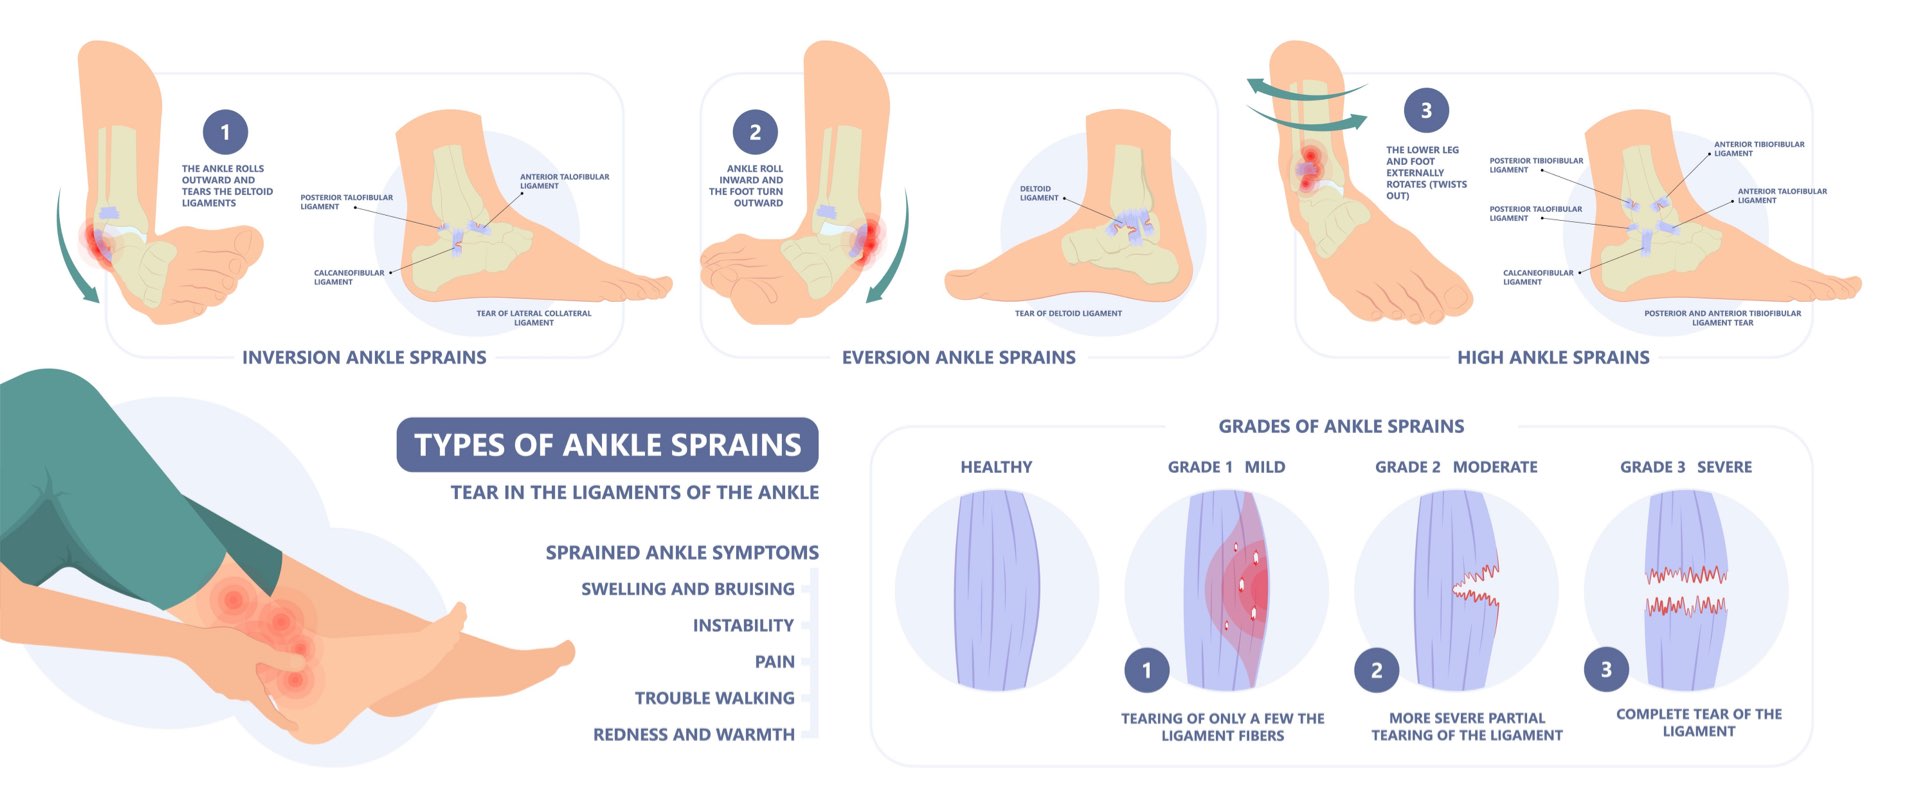 Get the jump on ankle sprains: Ankle sprain treatment